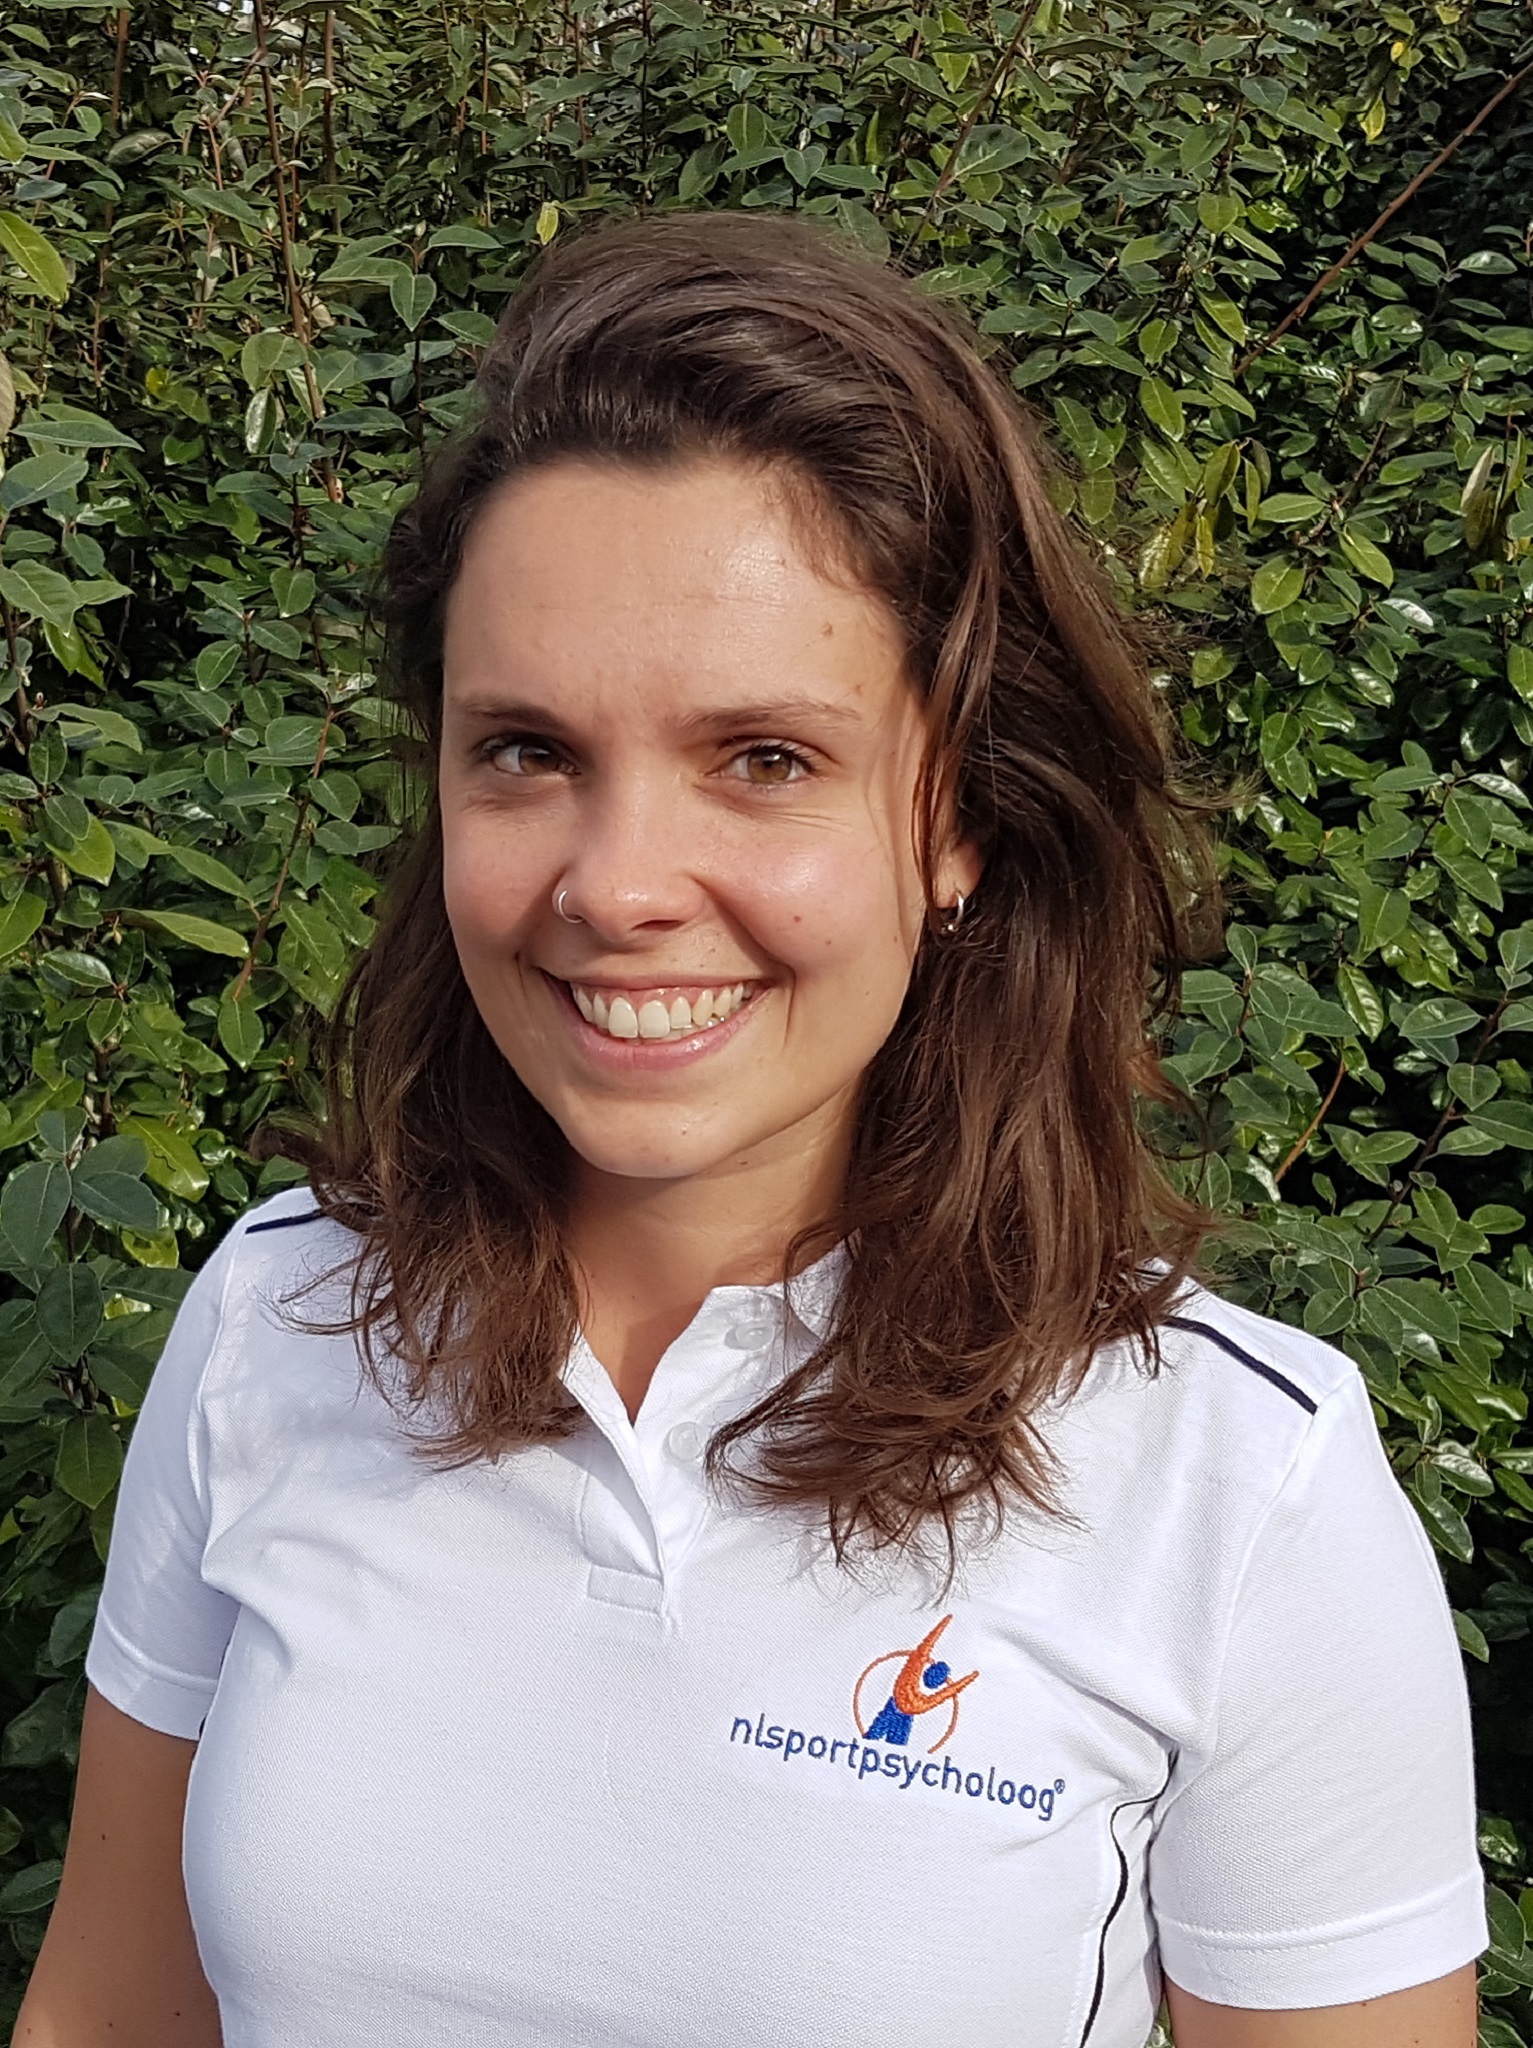 NL sportpsycholoog Katja Cardol - Hillegom